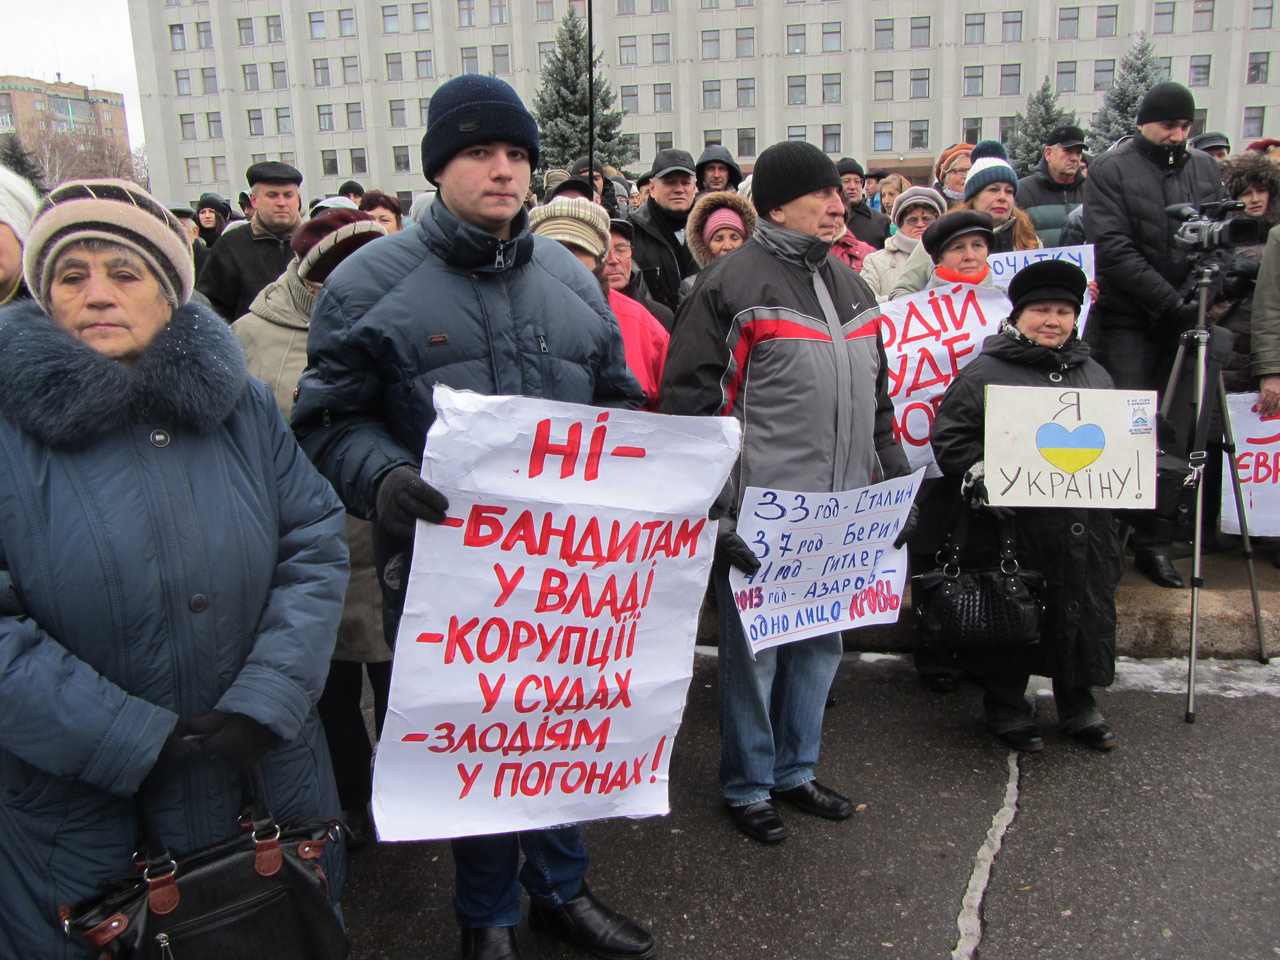 9 грудня, мітинг на площі перед адміністрацією. На плакатах популярні гасла «Зека Геть! Банду Геть!». Заклики про подолання корупції ще досі актуальні, а деякі лідери Майдану самі підхопили цю «хворобу» українських посадовців.